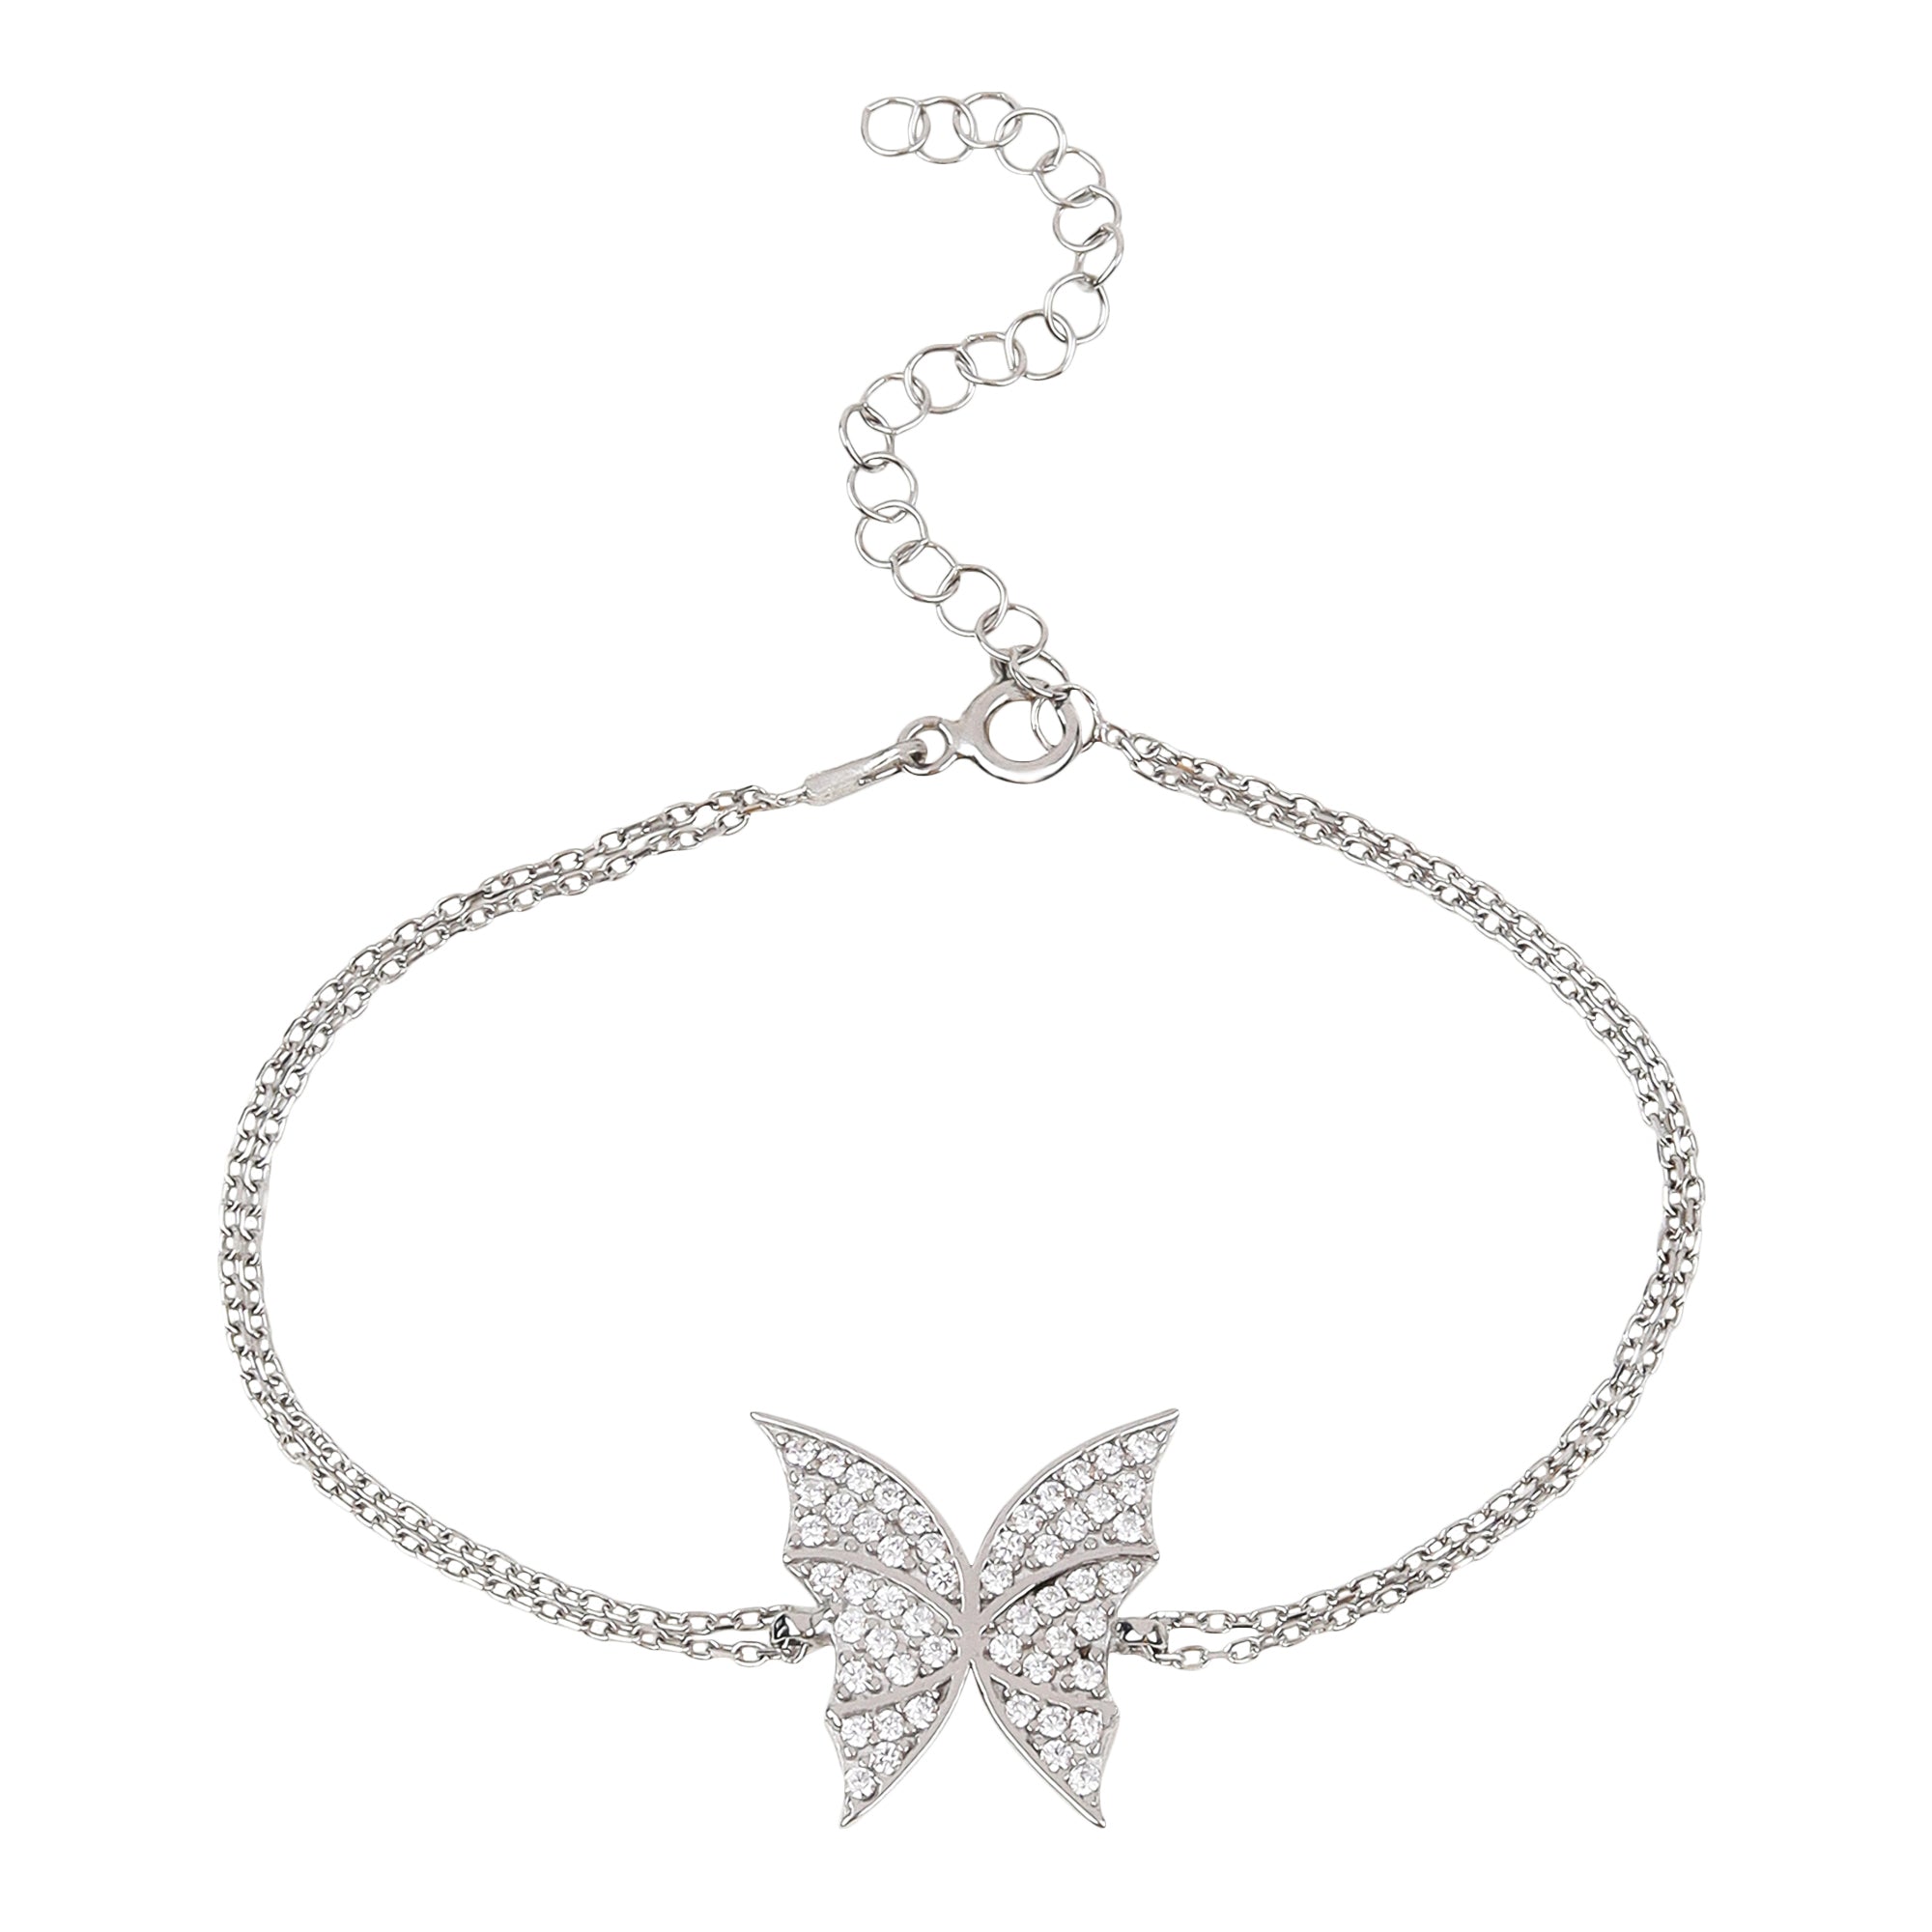 Winged Silver Butterfly Bracelet